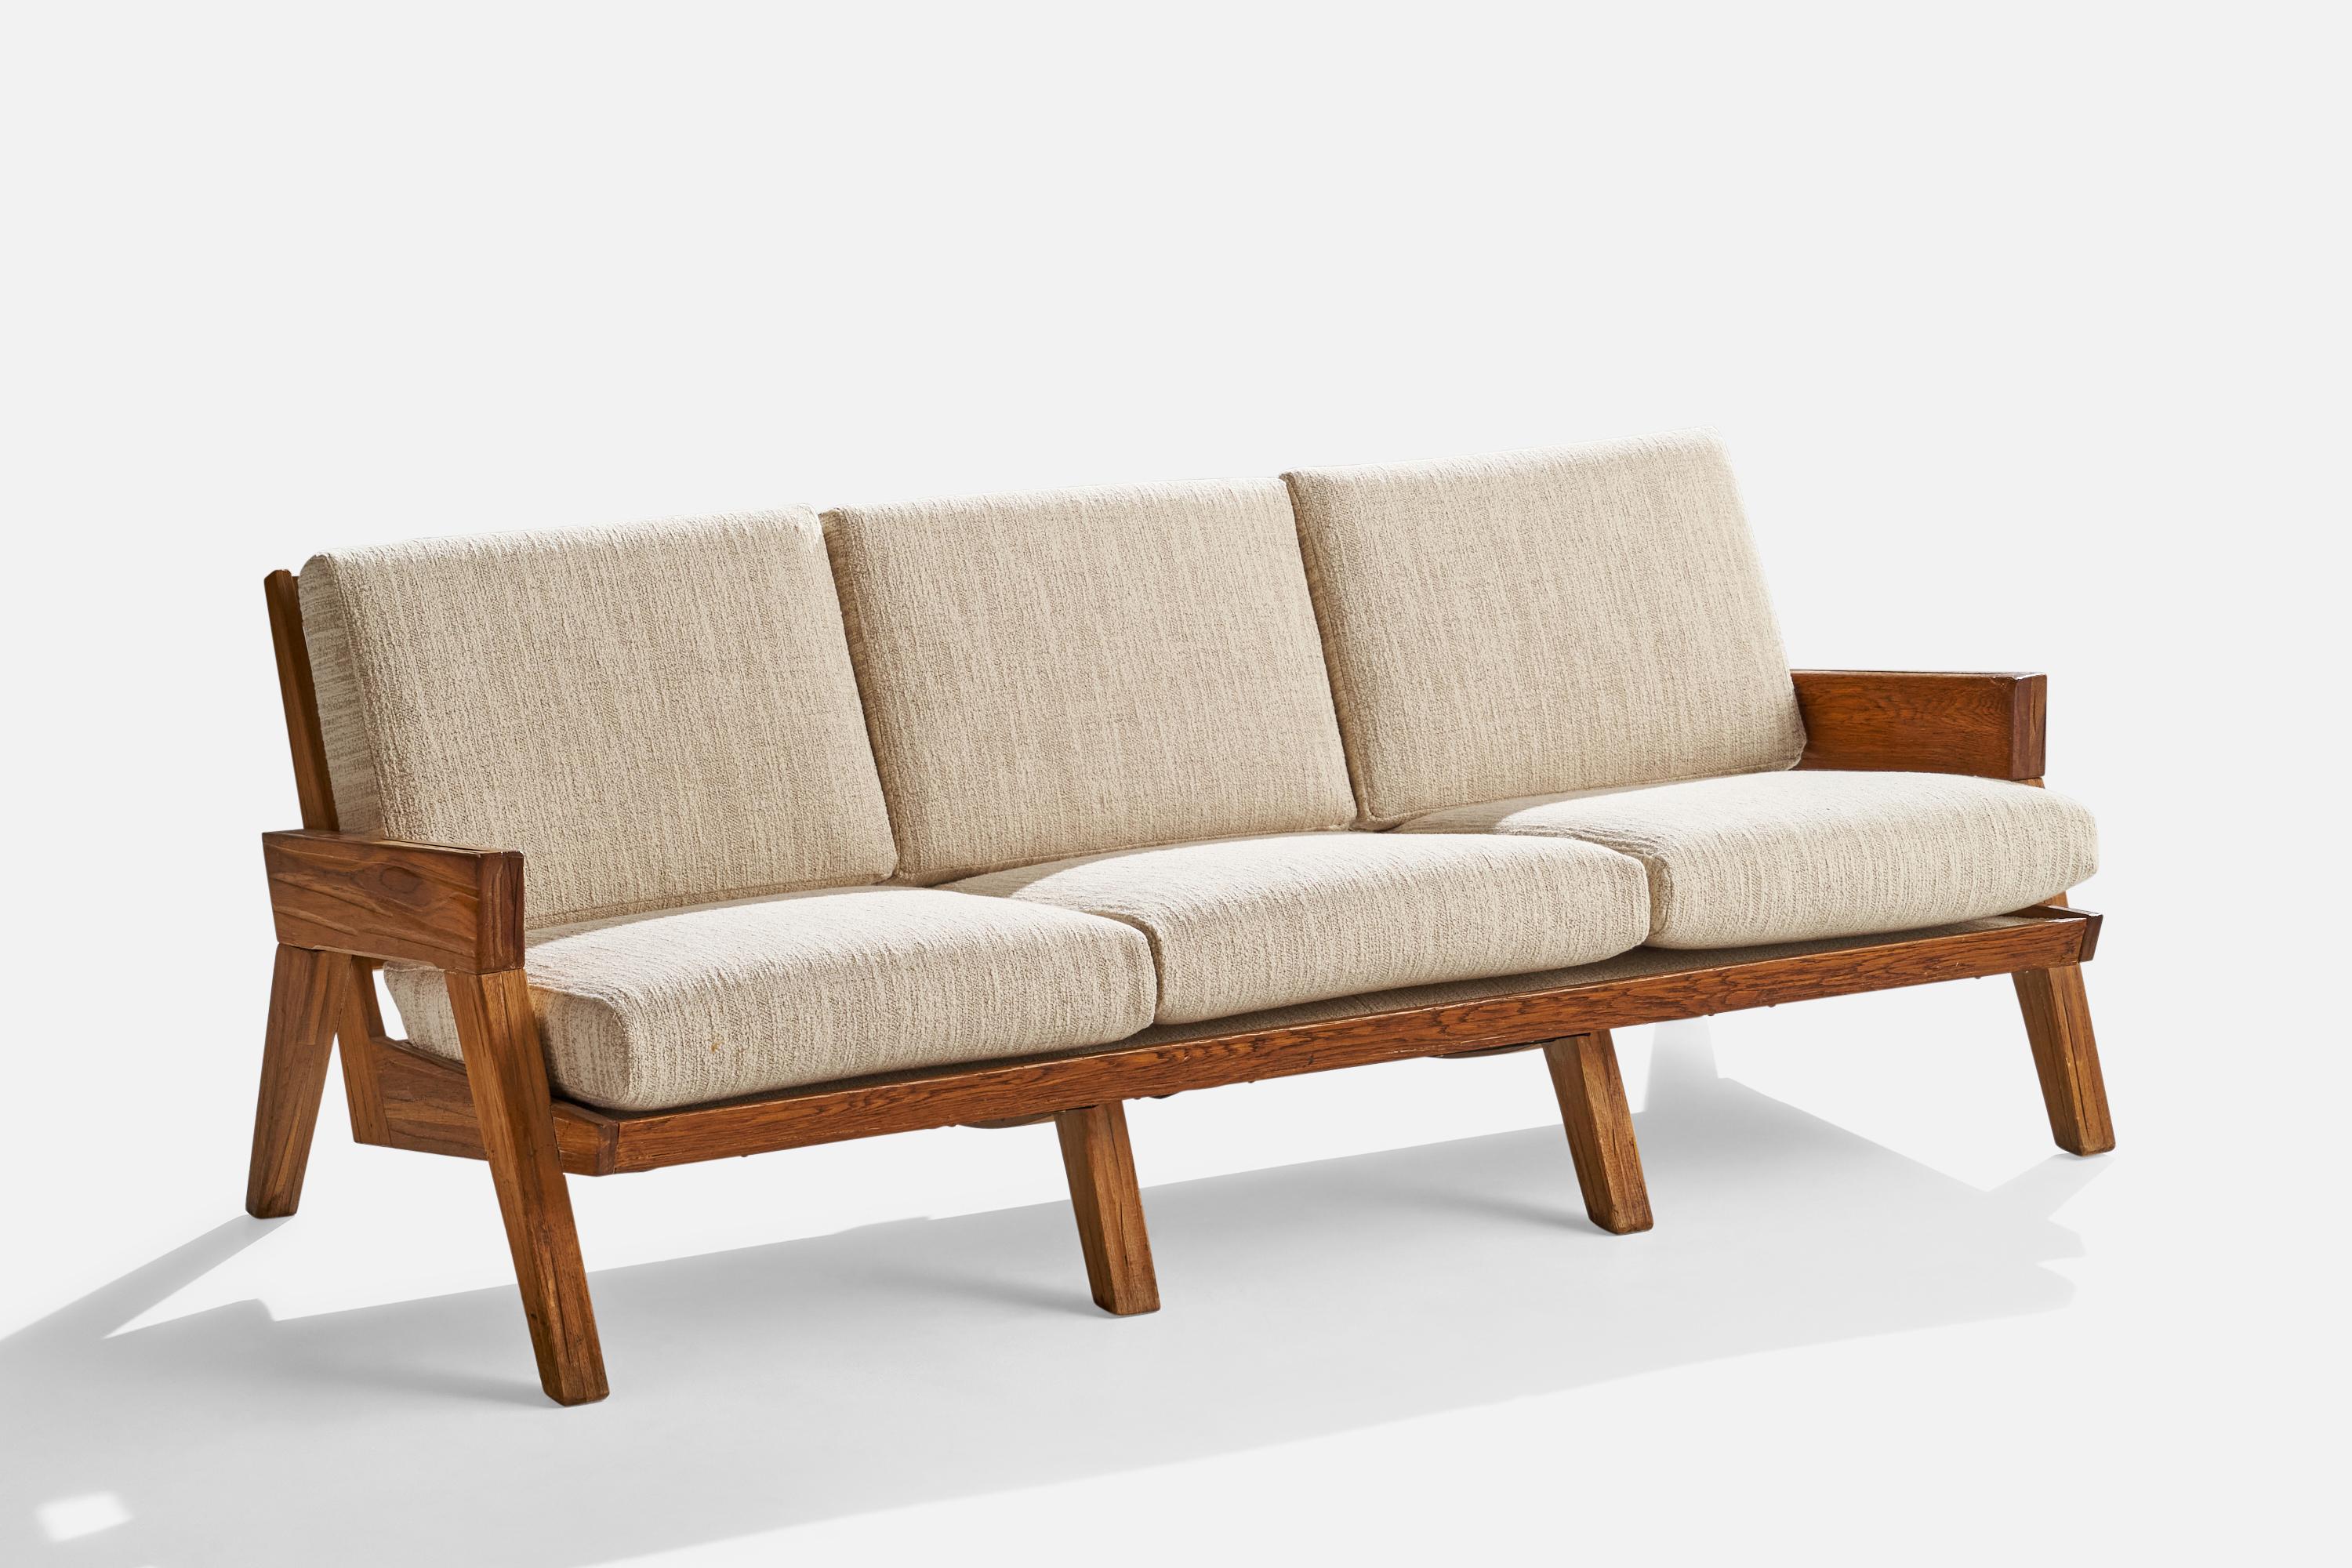 Ein Sofa aus gebrannter Eiche und cremefarbenem Stoff, entworfen und hergestellt von A. Brandt Ranch Oak, USA, ca. 1950er Jahre.

Sitzhöhe 16